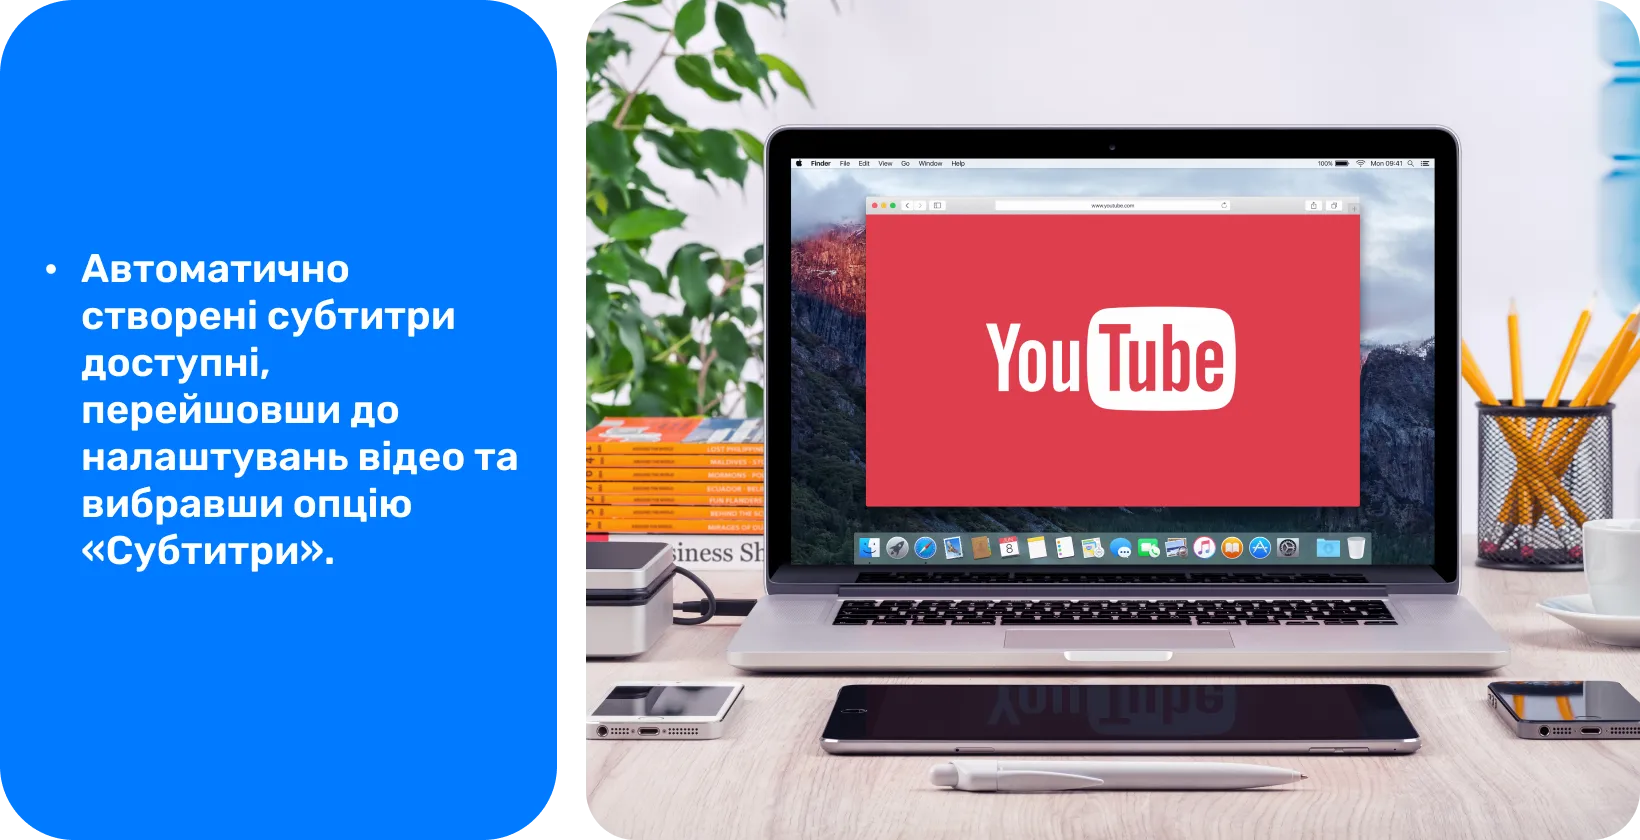 YouTube на екрані ноутбука, пропагуючи використання автоматично згенерованих субтитрів для доступності відео та SEO.